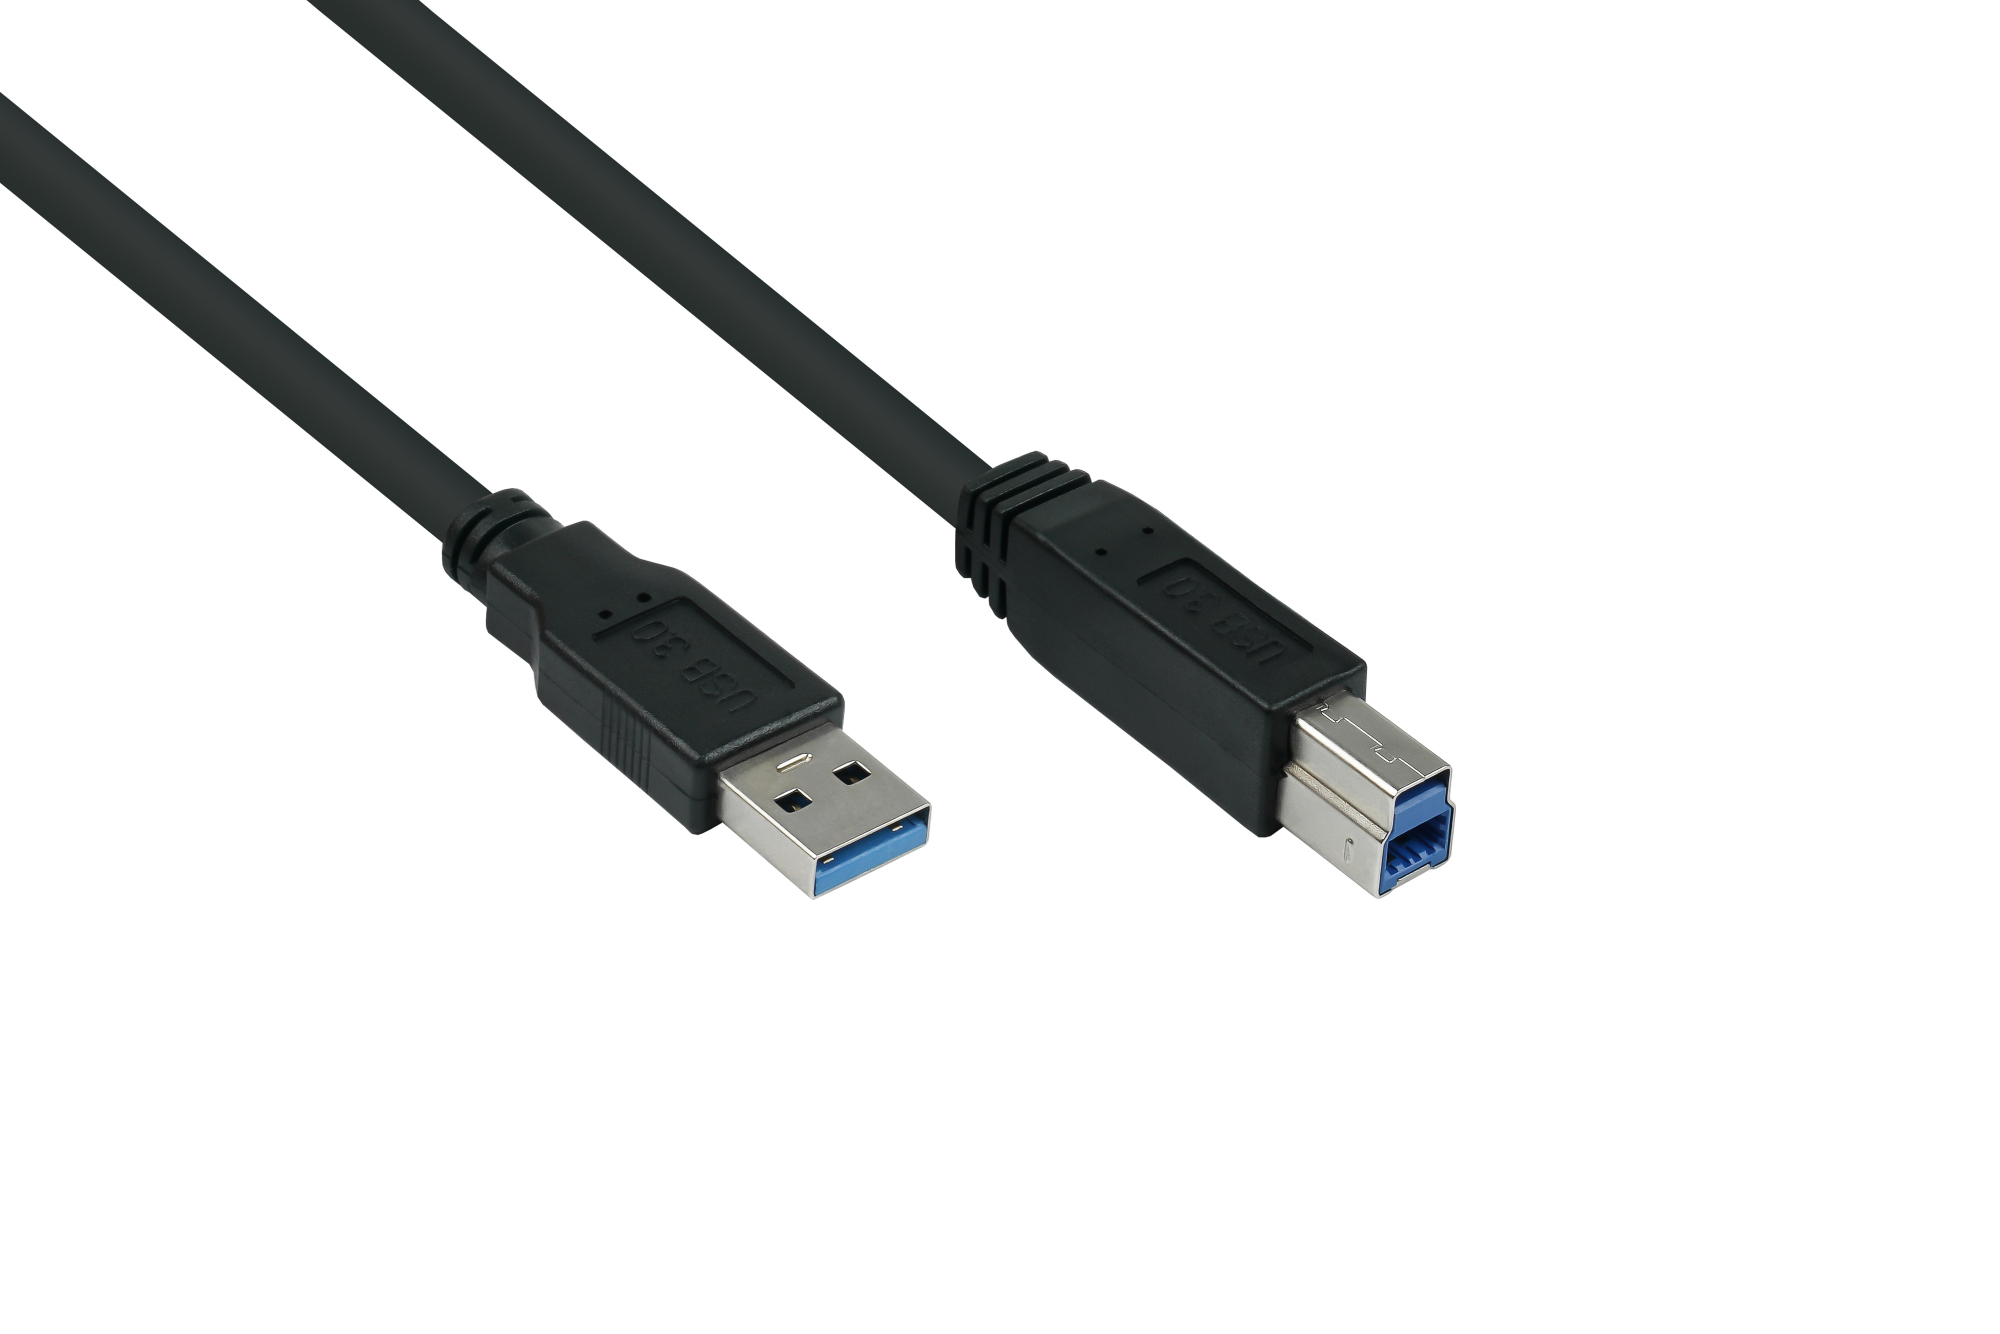 USB 3.0 Kabel Stecker A an Stecker B, Premium, AWG28 / AWG24, UL, KUPFER, schwarz, 1m